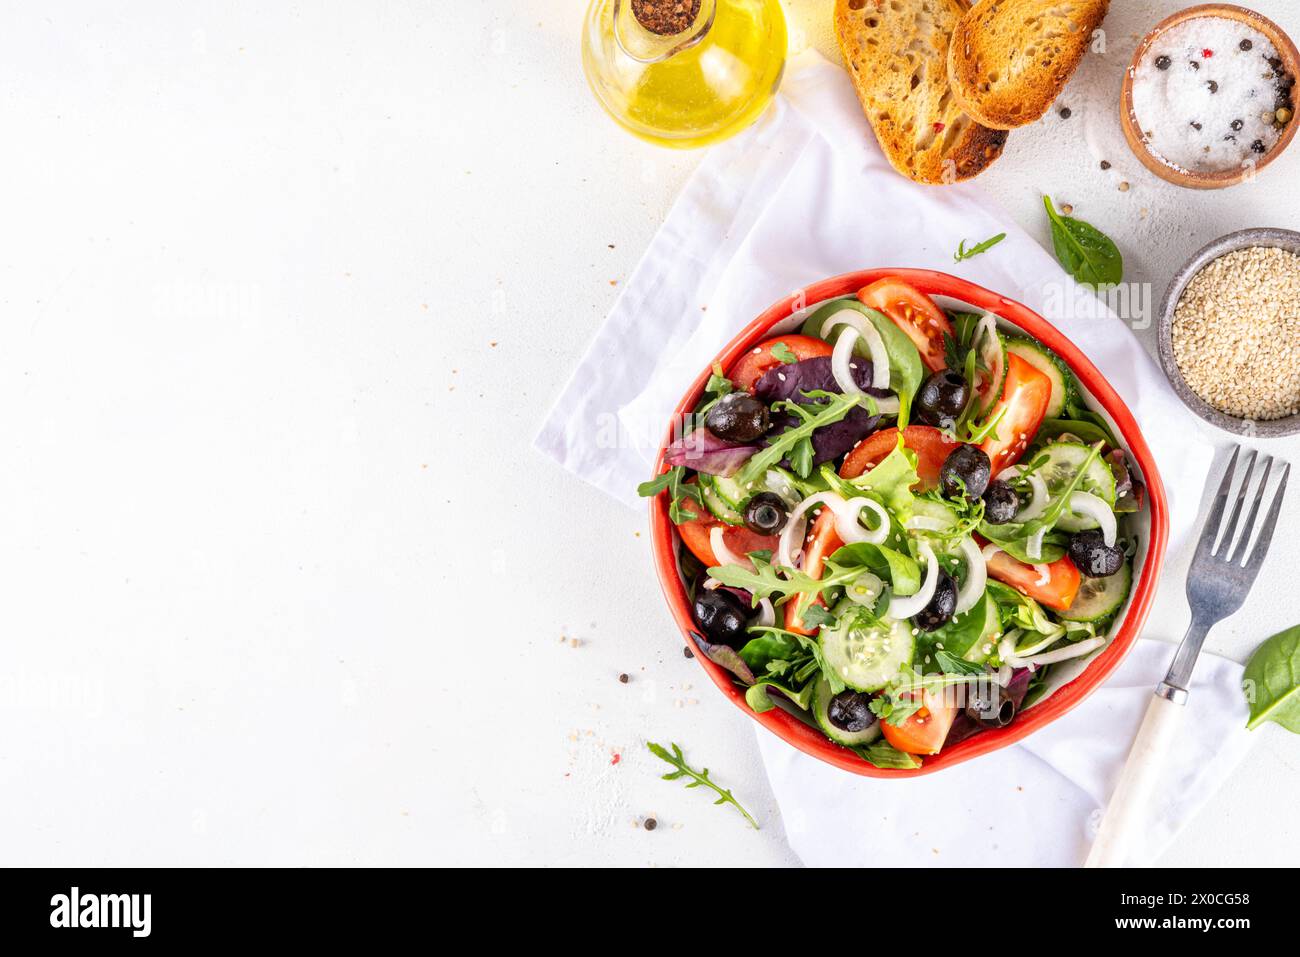 Salade biologique fraîche avec tomates, concombre, olives et légumes verts. Nourriture végétalienne saine, salade grecque de légumes méditerranéens sur table de cuisine blanche co Banque D'Images